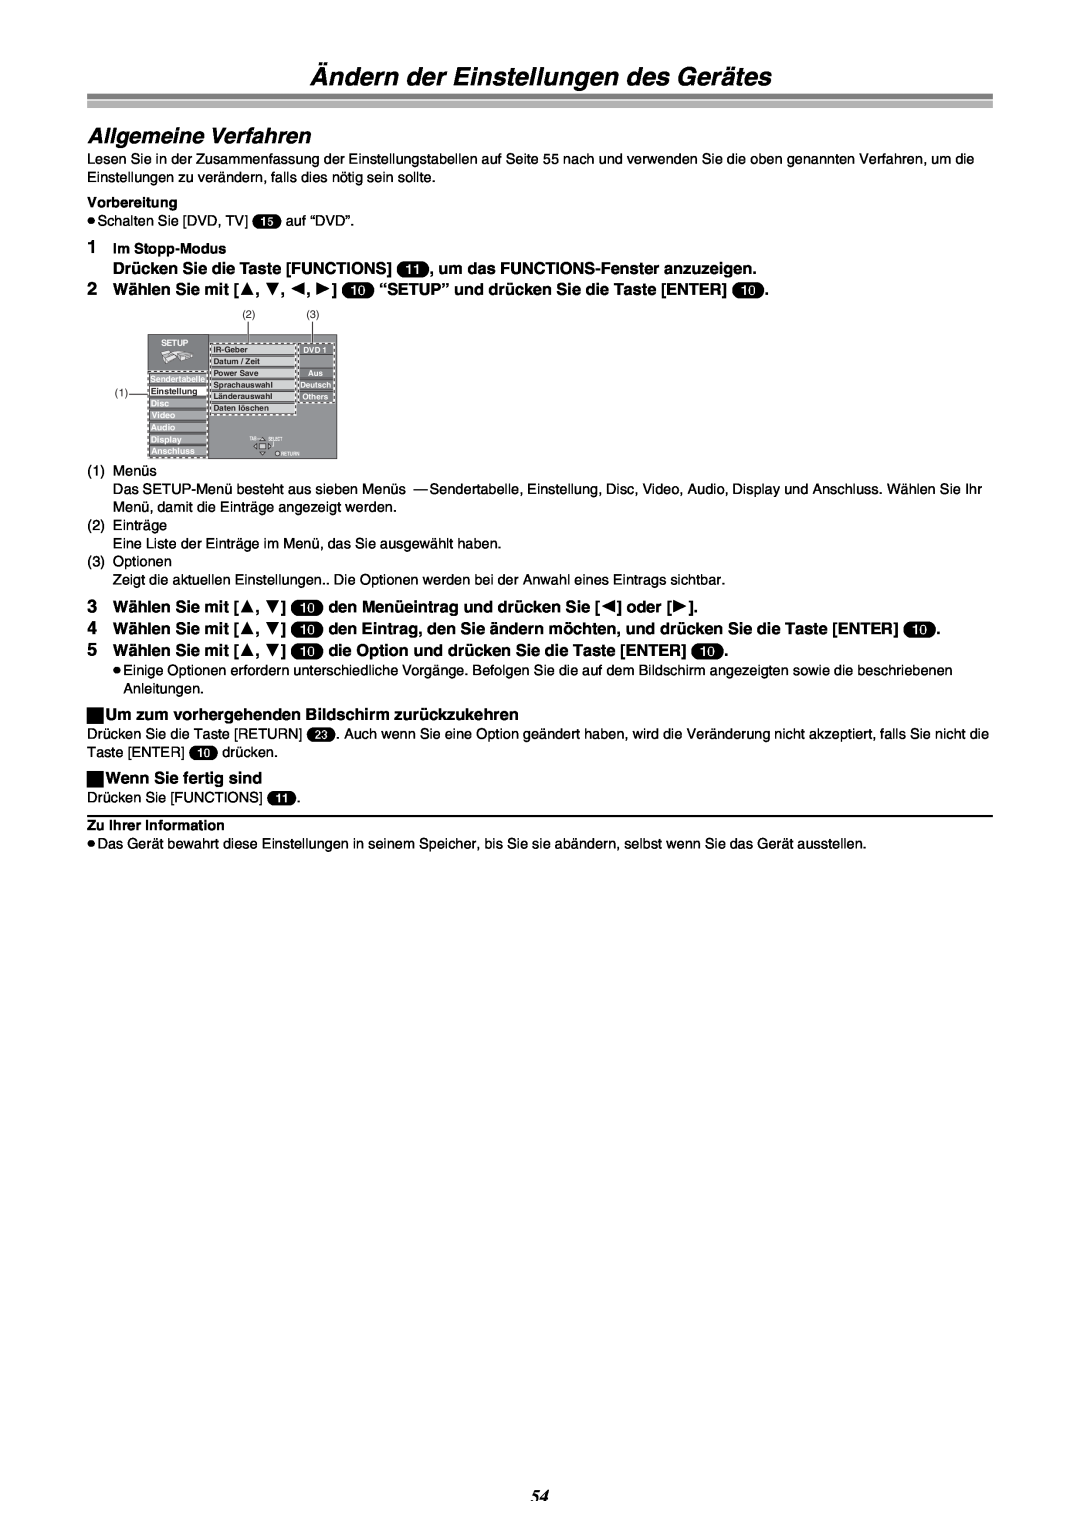 Panasonic DMR-E30 manual Ändern der Einstellungen des Gerätes, Allgemeine Verfahren, IR-Geber, Datum / Zeit, Power Save 